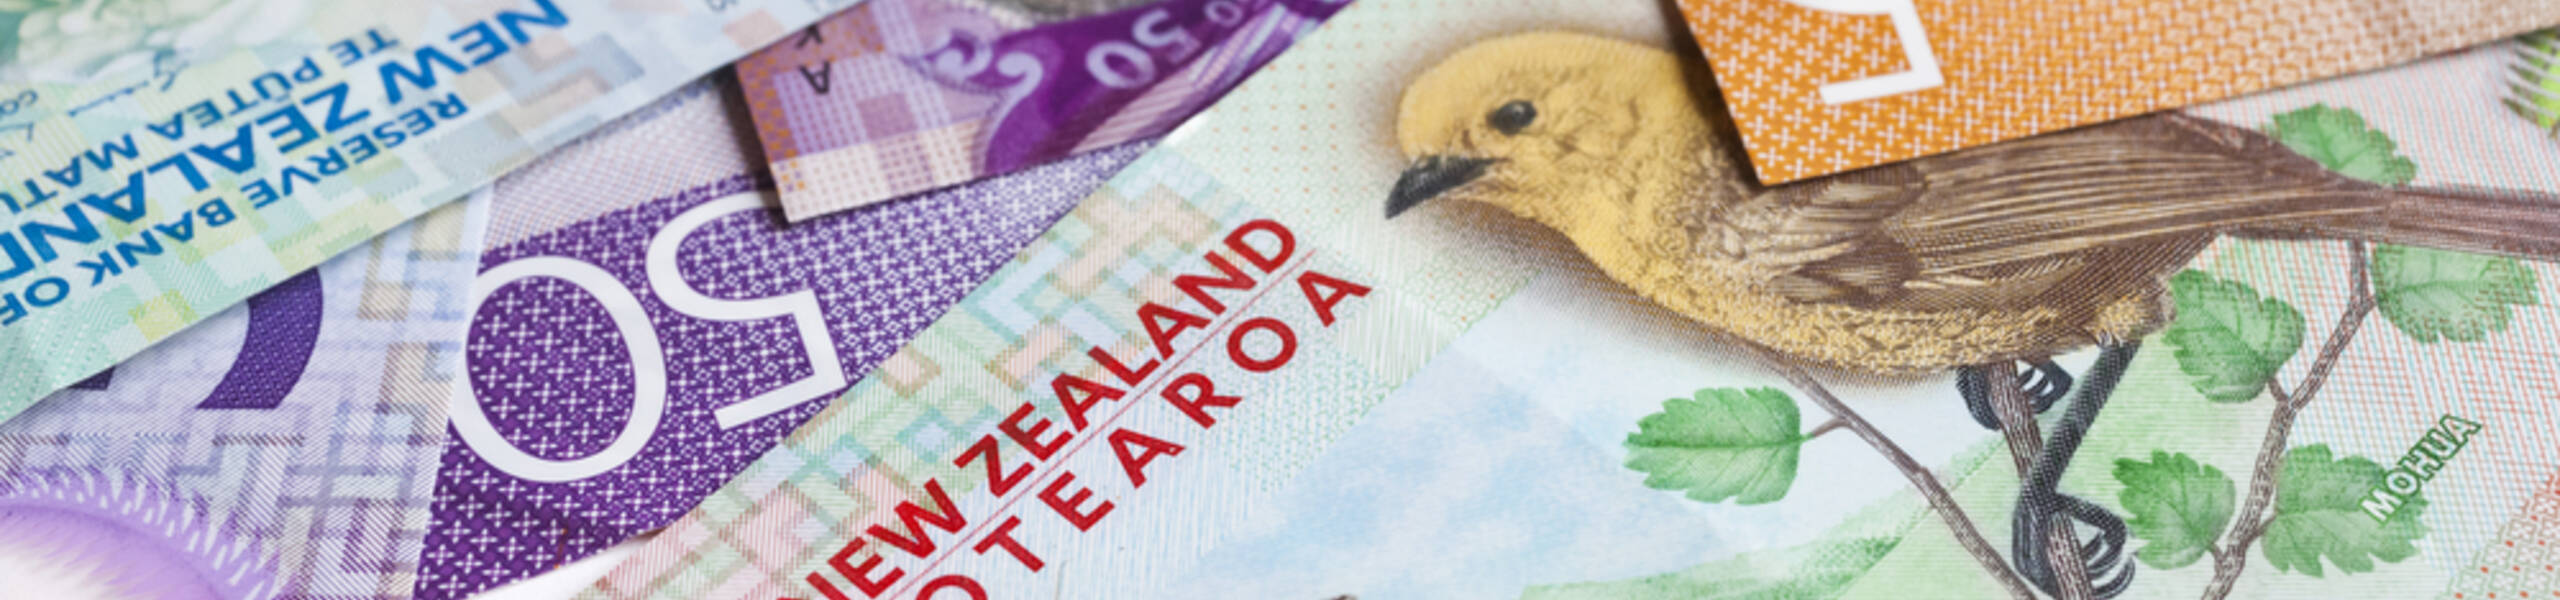 ดัชนียอดขายปลีกบัตรอิเล็กทรอนิกส์ของนิวซีแลนด์